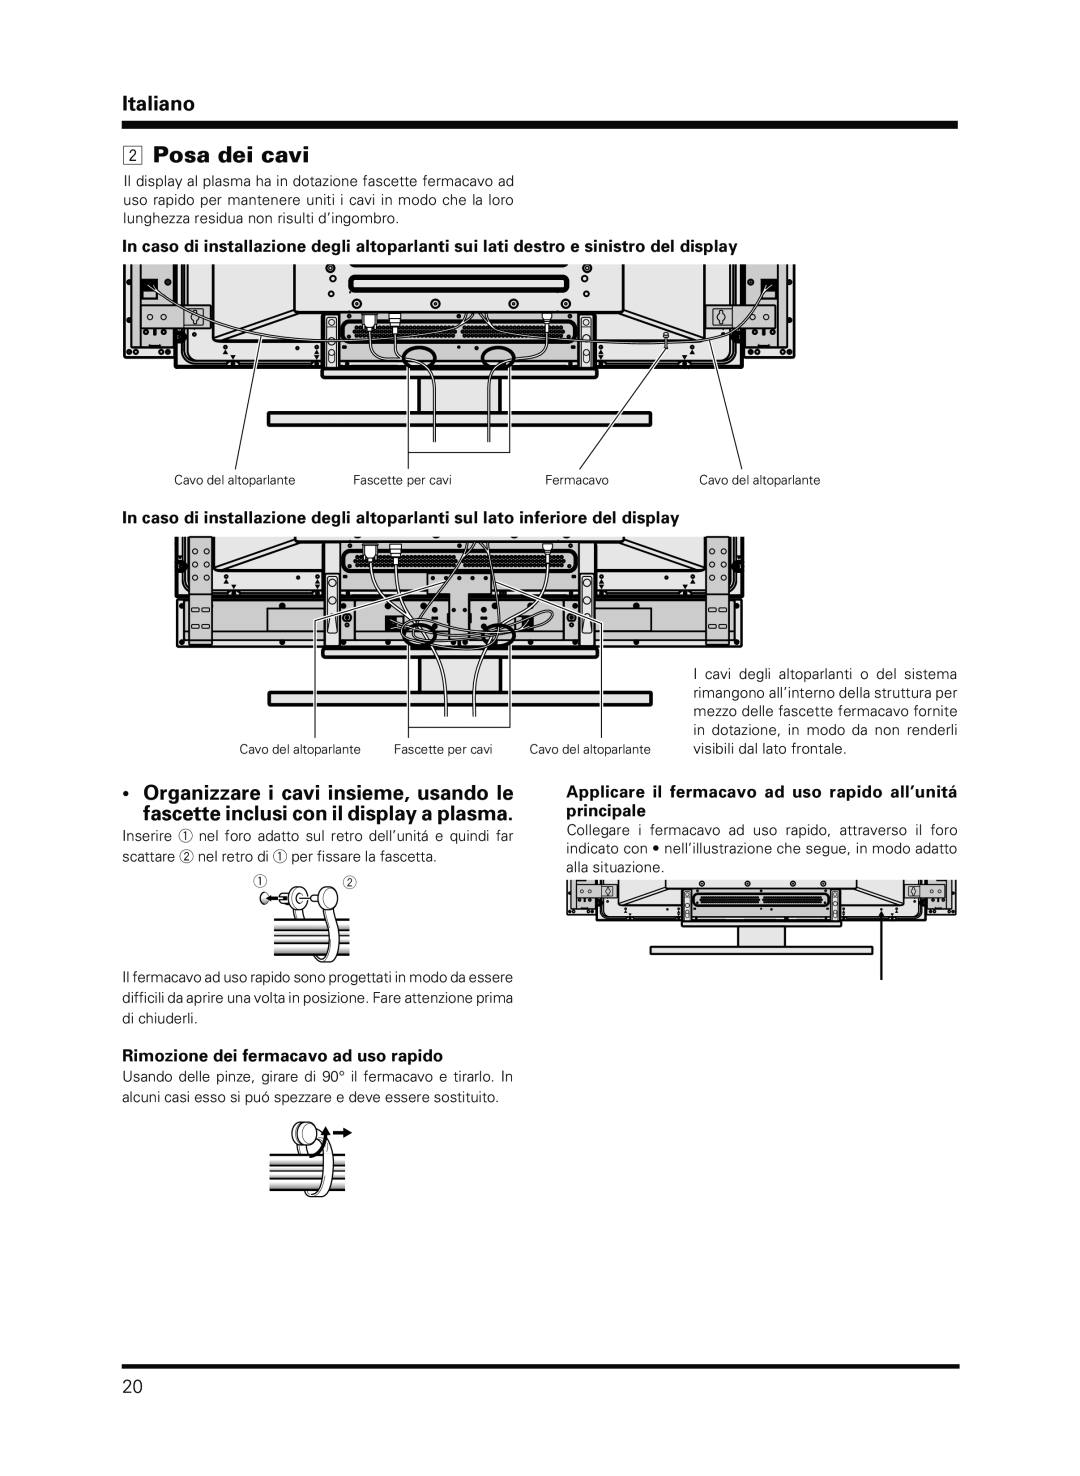 Pioneer PDP-S13-LR manual Posa dei cavi, Rimozione dei fermacavo ad uso rapido, Italiano 